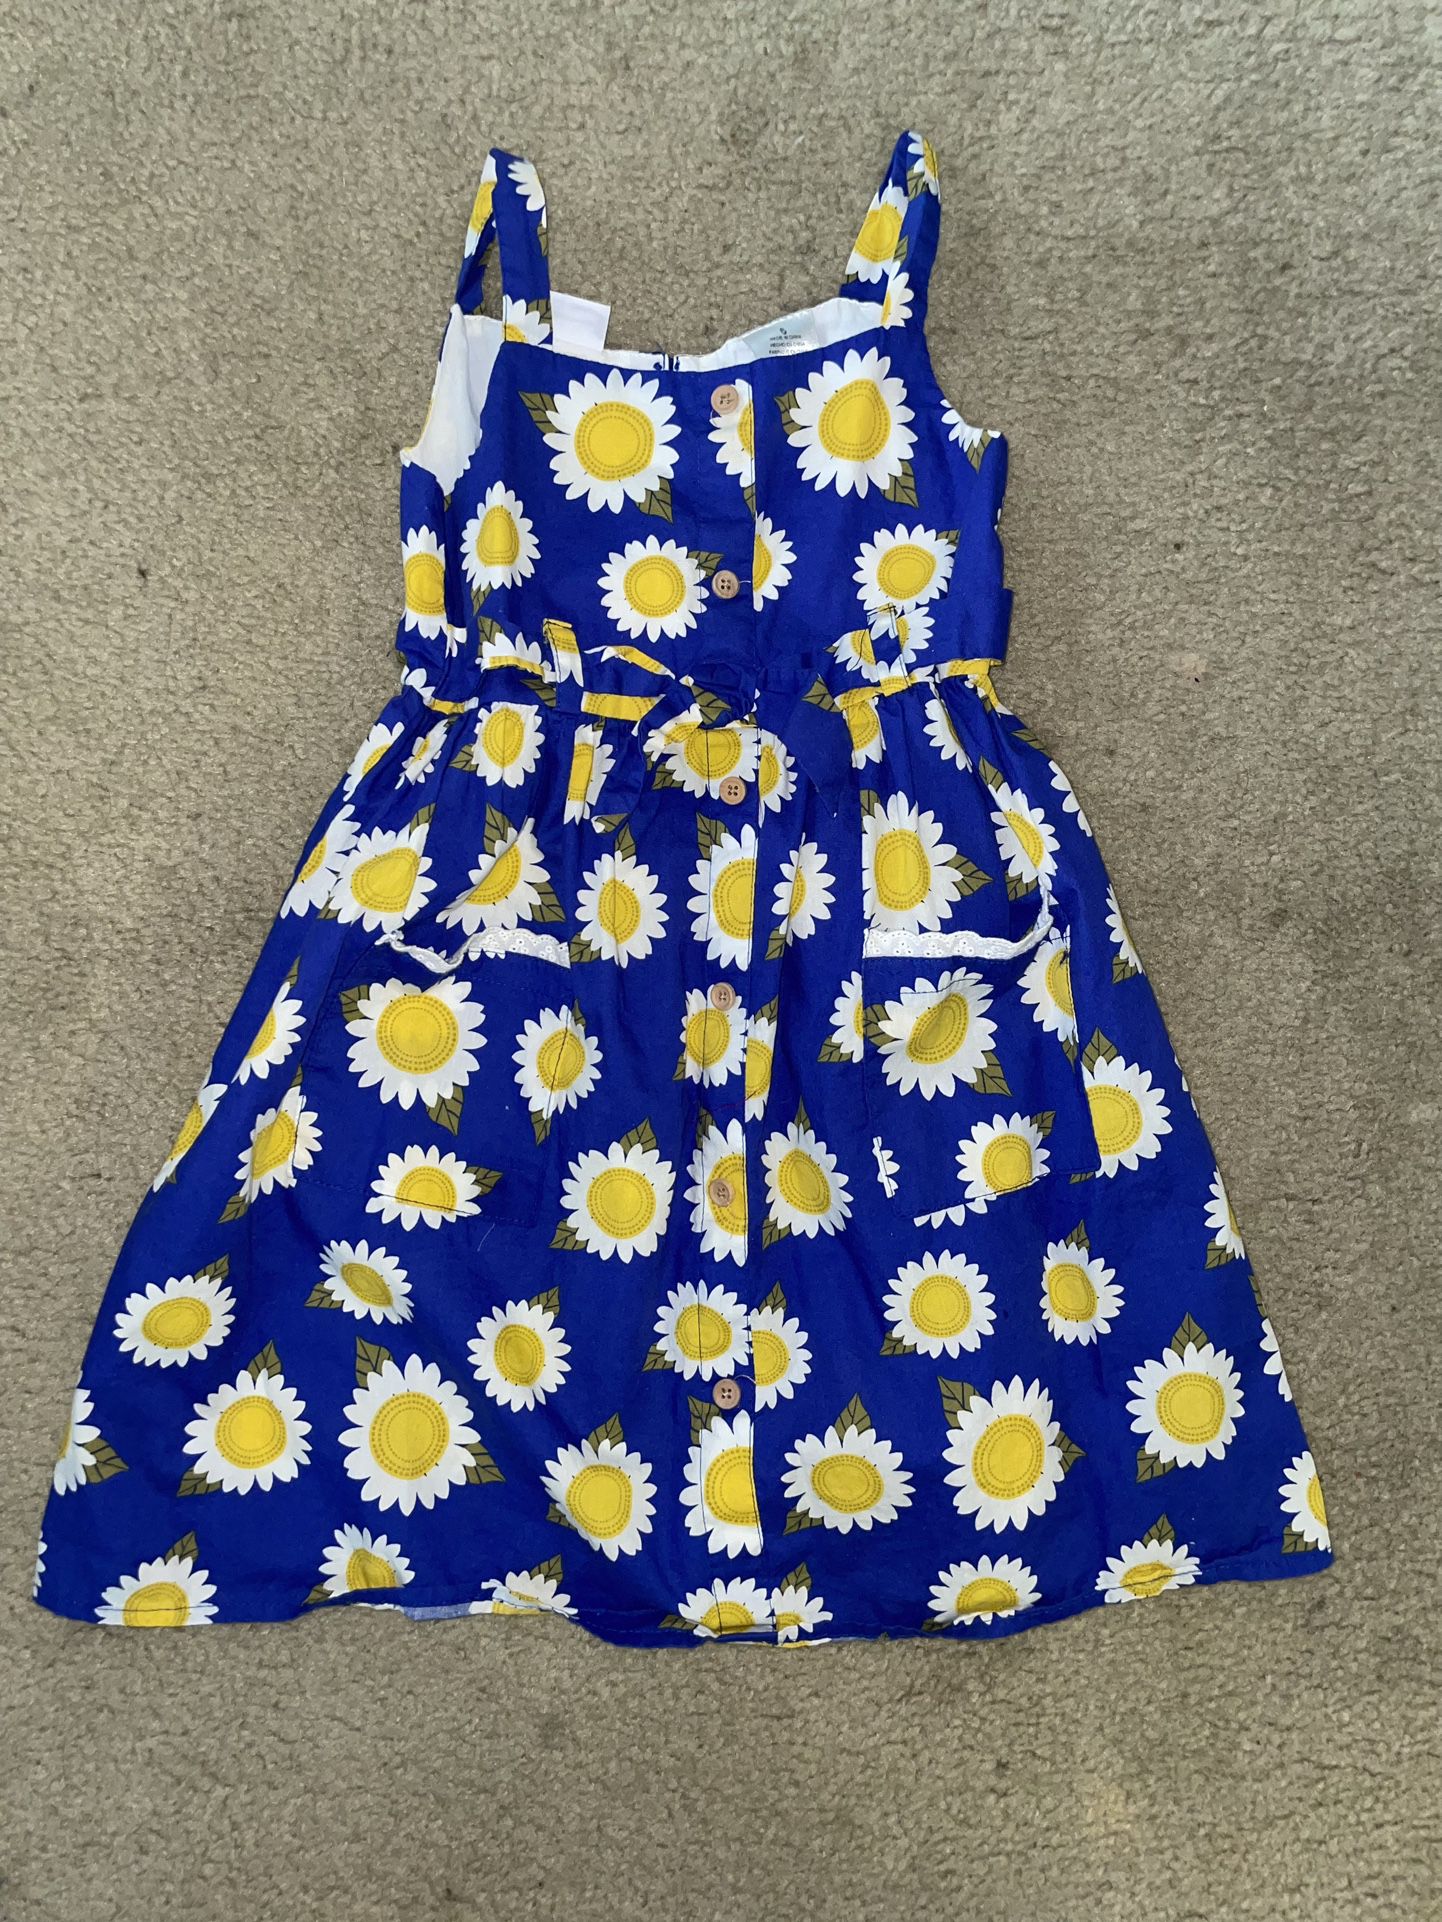 Girls Summer Dress (sunflower) Size 6